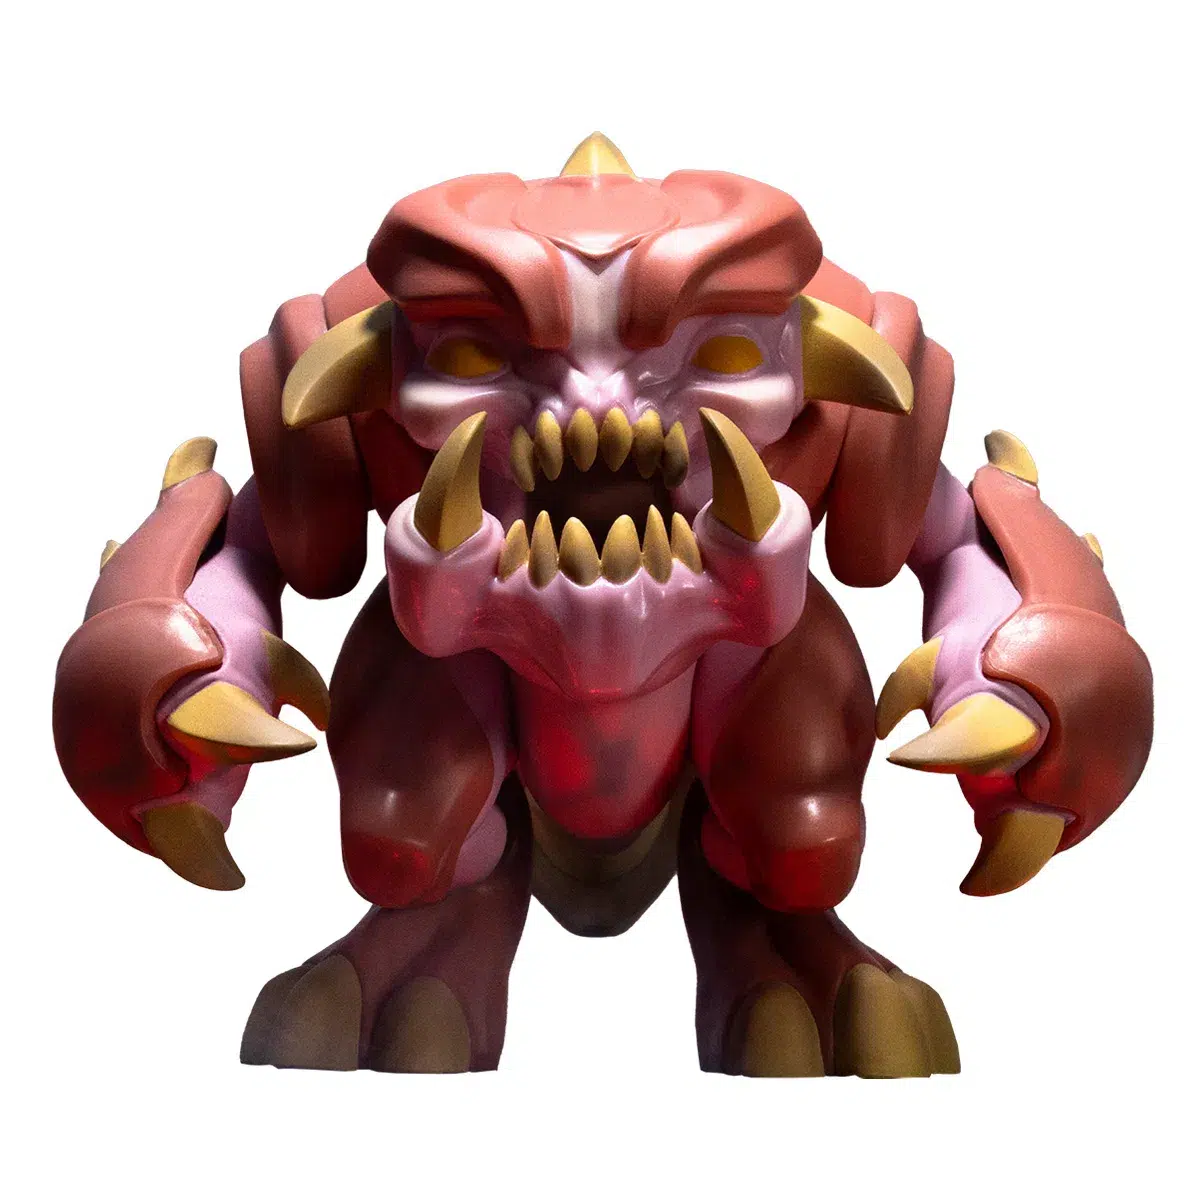 Doom Figure "Pinky"